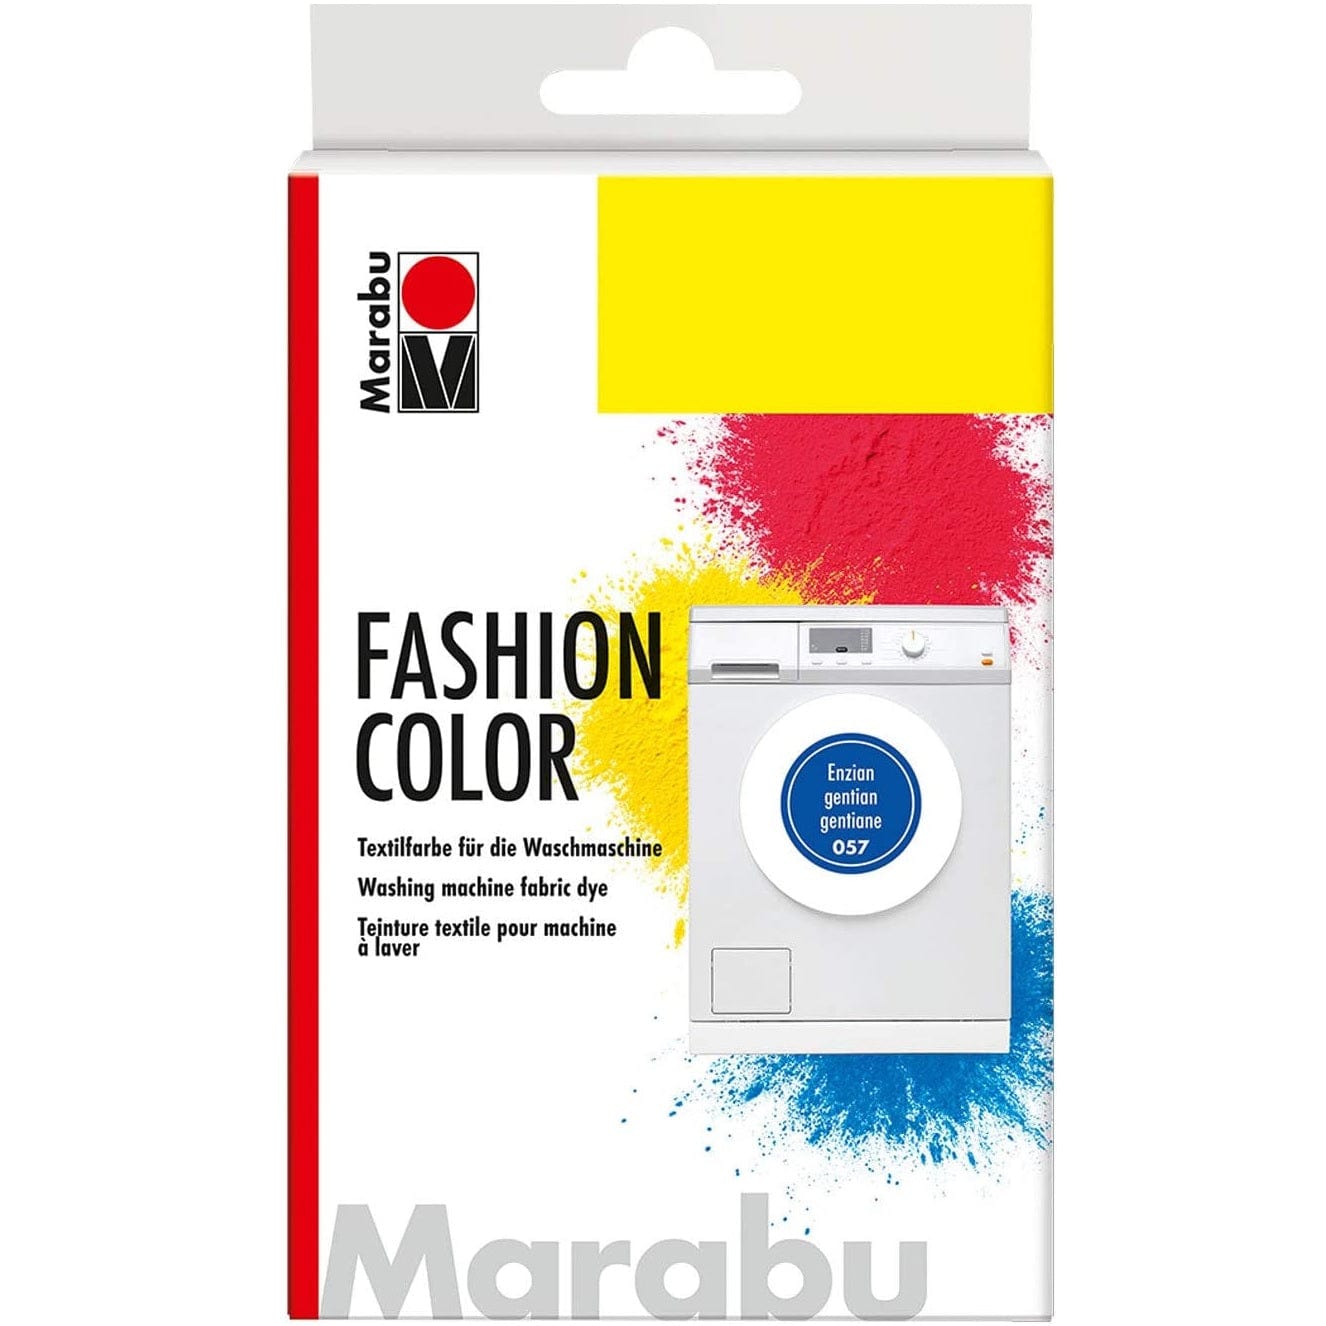 Marabu Toys Marabu Fashion Color, 057 Gentian